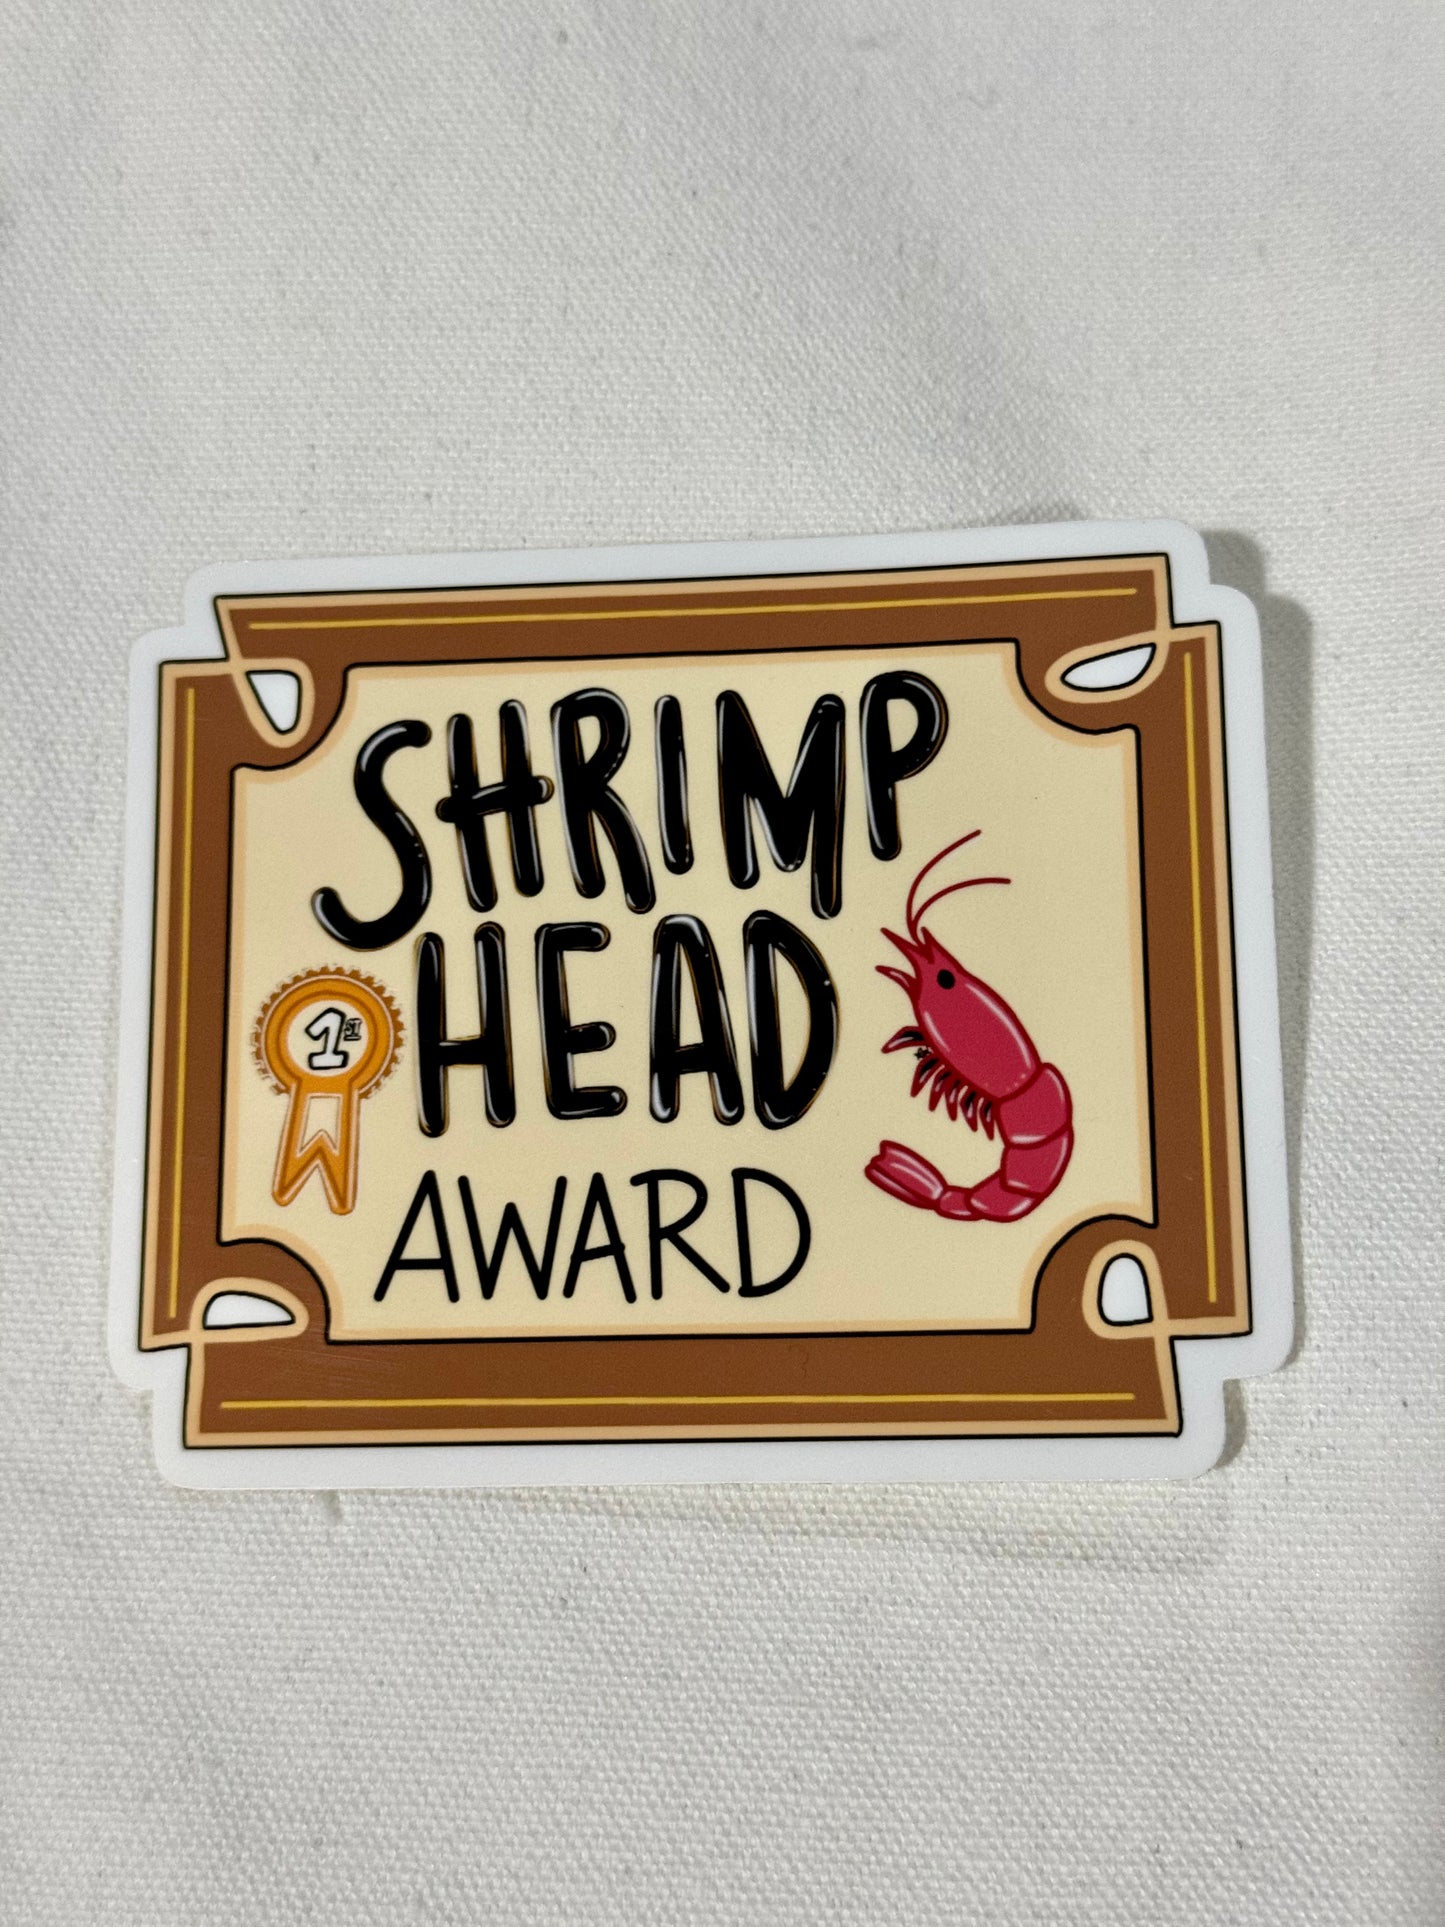 Shrimp head sticker